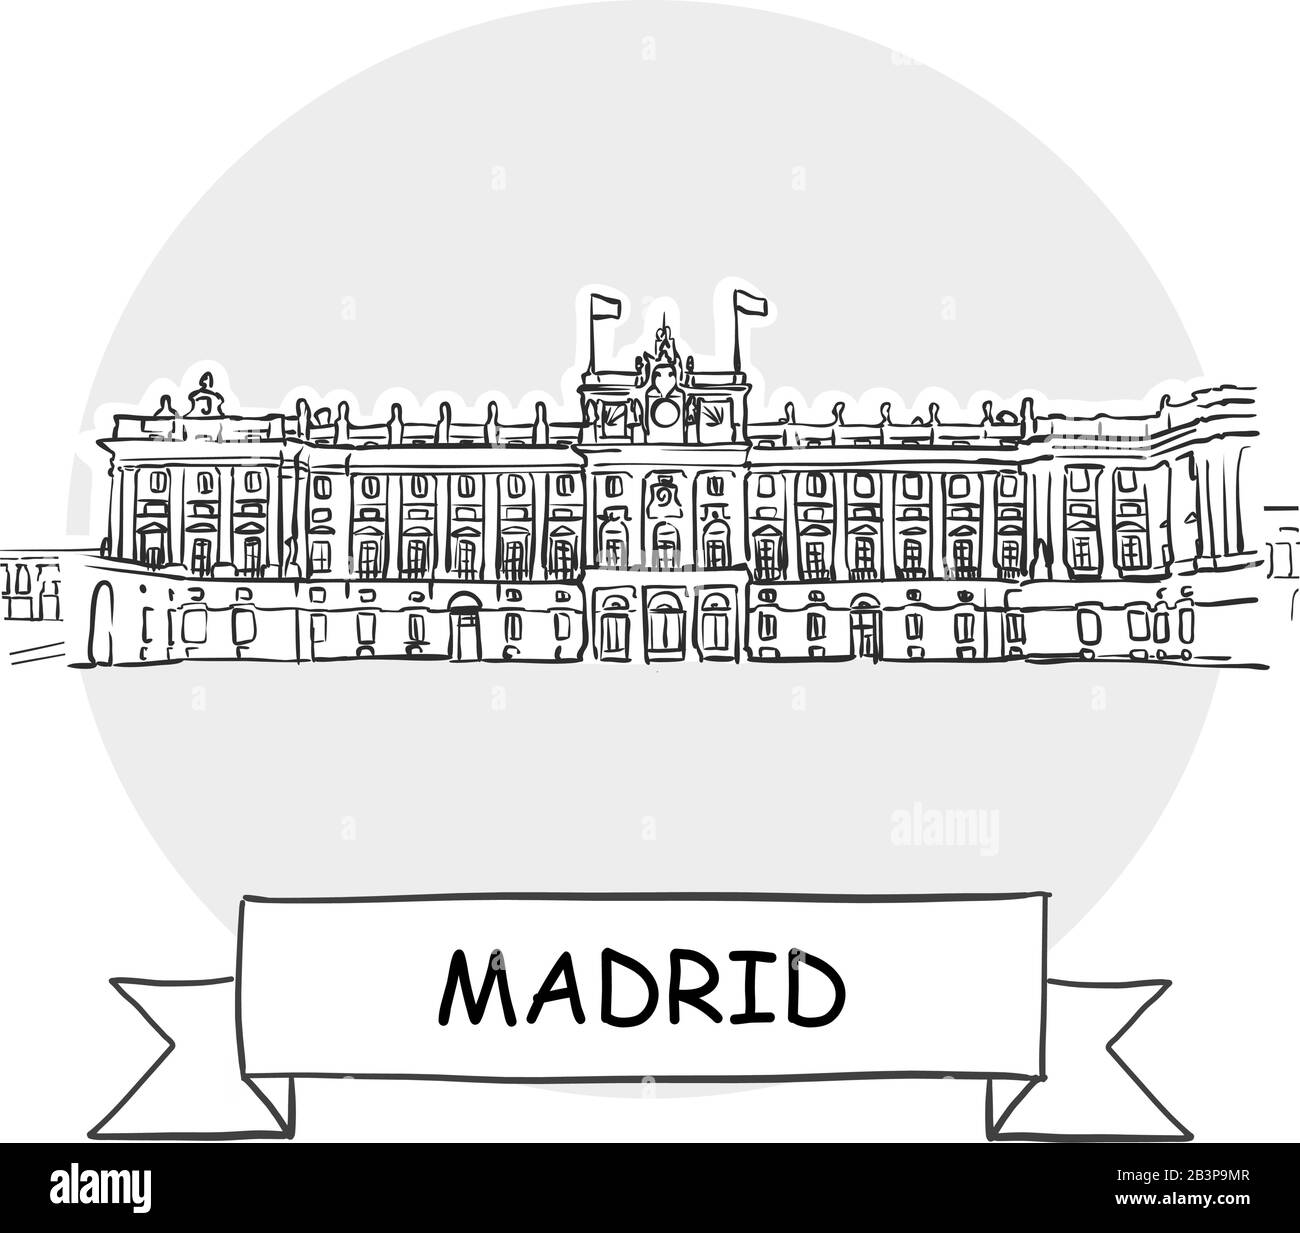 Segno Vettoriale Della Città Di Madrid. Illustrazione dell'arte di linea con barra multifunzione e titolo. Illustrazione Vettoriale